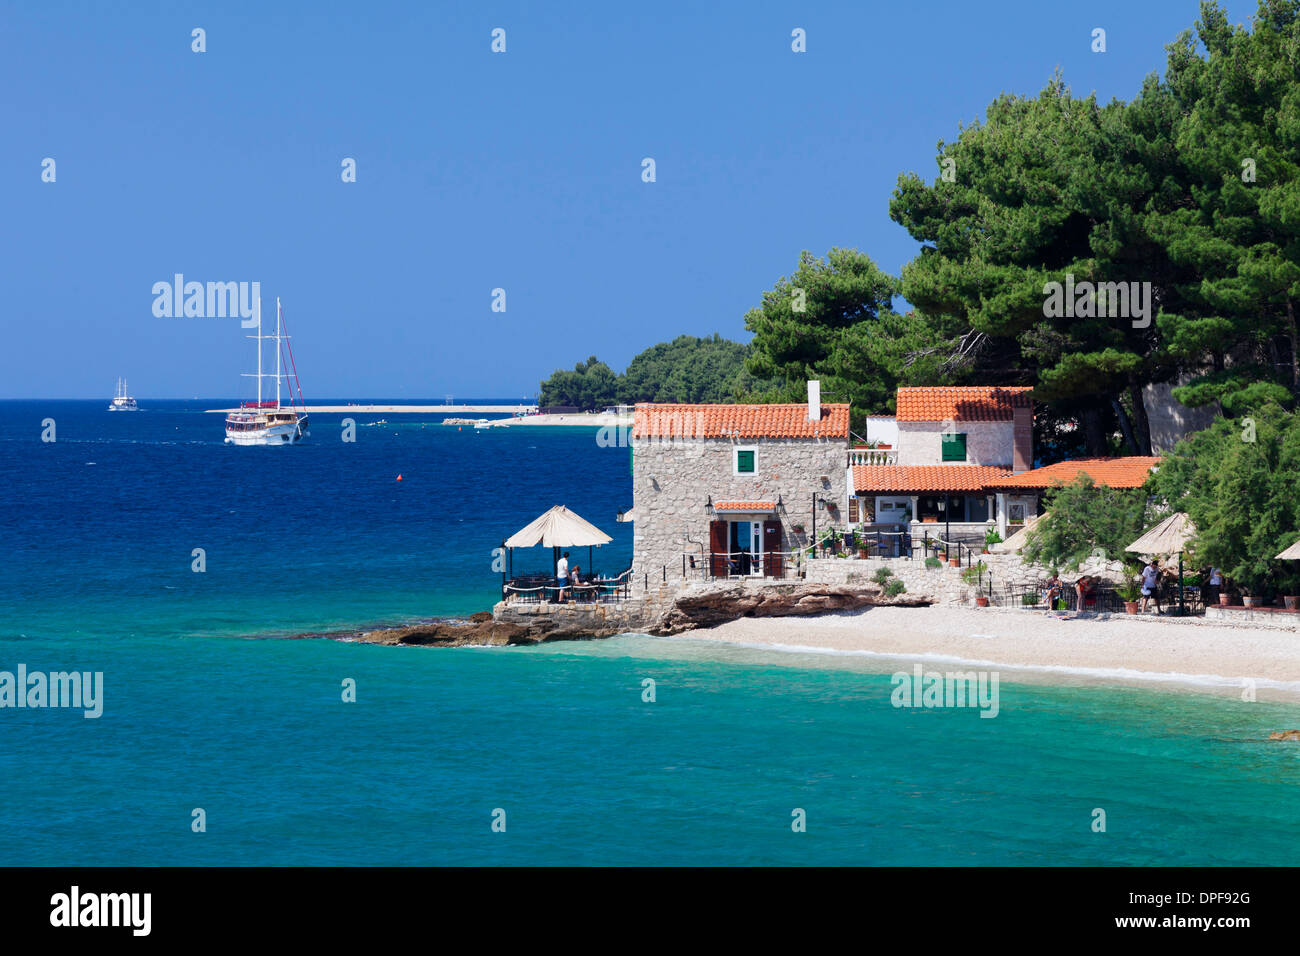 Restaurant à la plage avec bateau à voile, Bol, Île de Brac, la Dalmatie, Croatie, Europe Banque D'Images